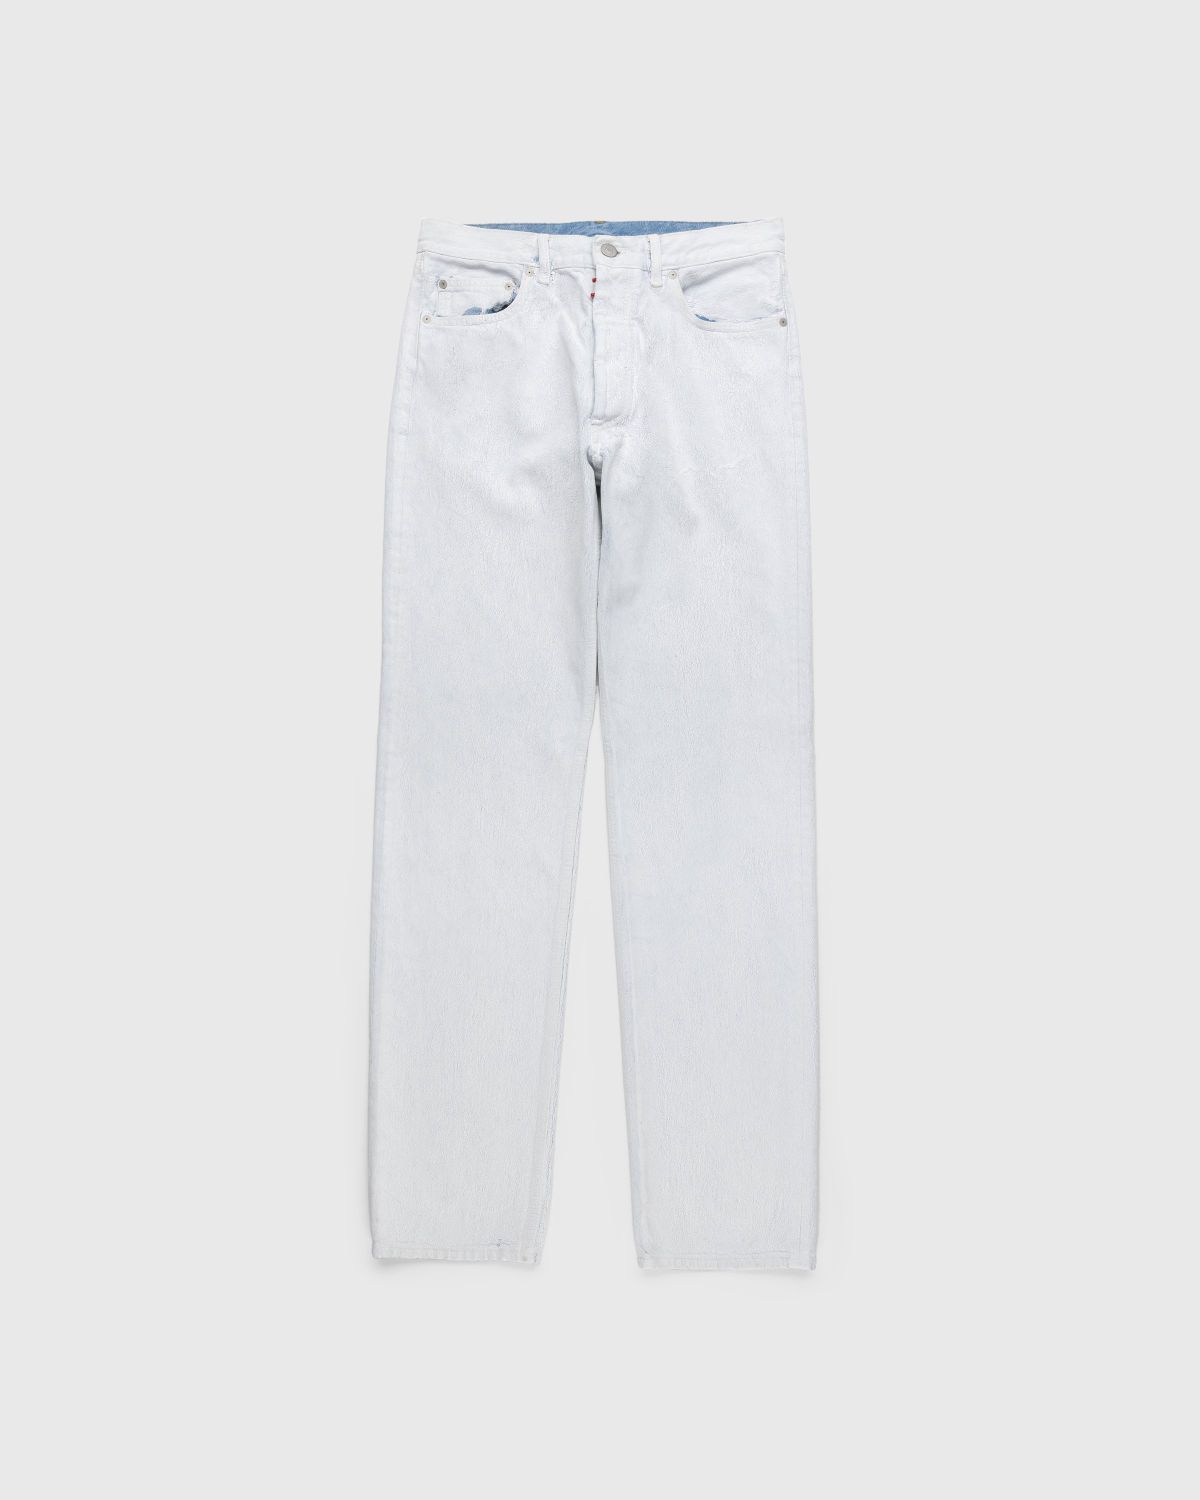 Maison Margiela – 5-Pocket Paint Jeans White - Pants - White - Image 1